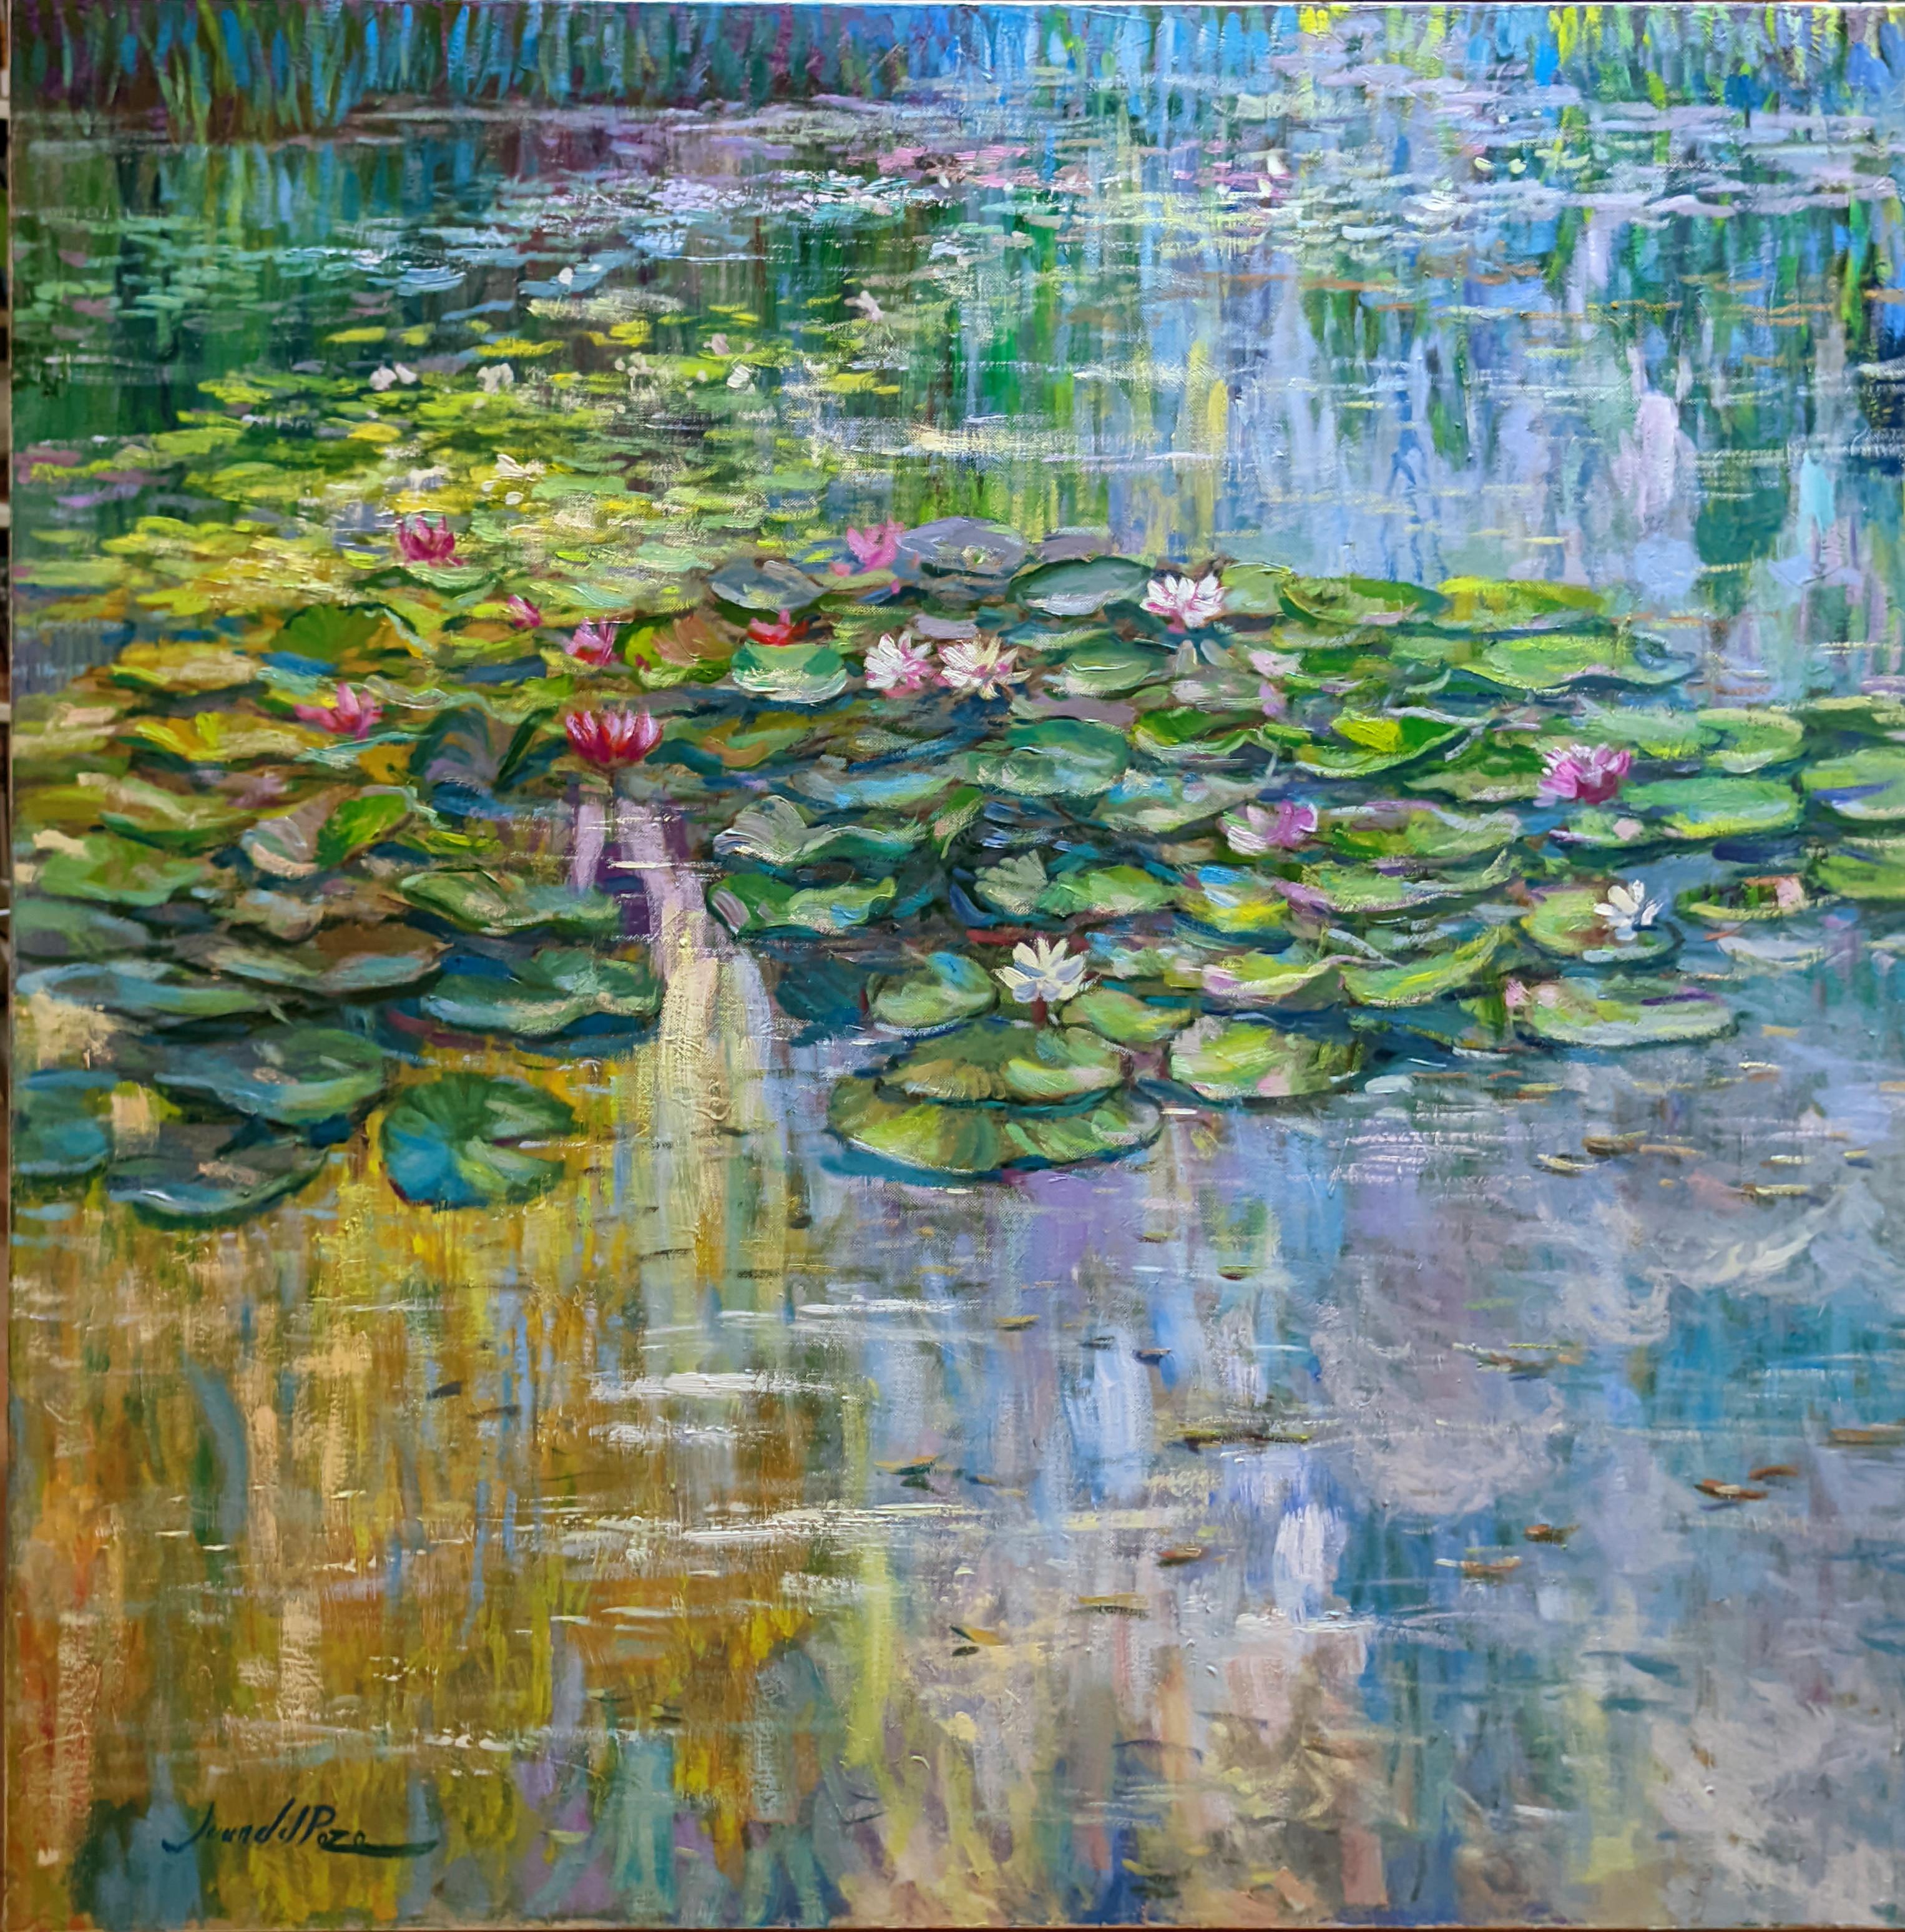 Juan del Pozo Landscape Painting - Waterlilies colours - original impressionism oil painting-modern landscape art